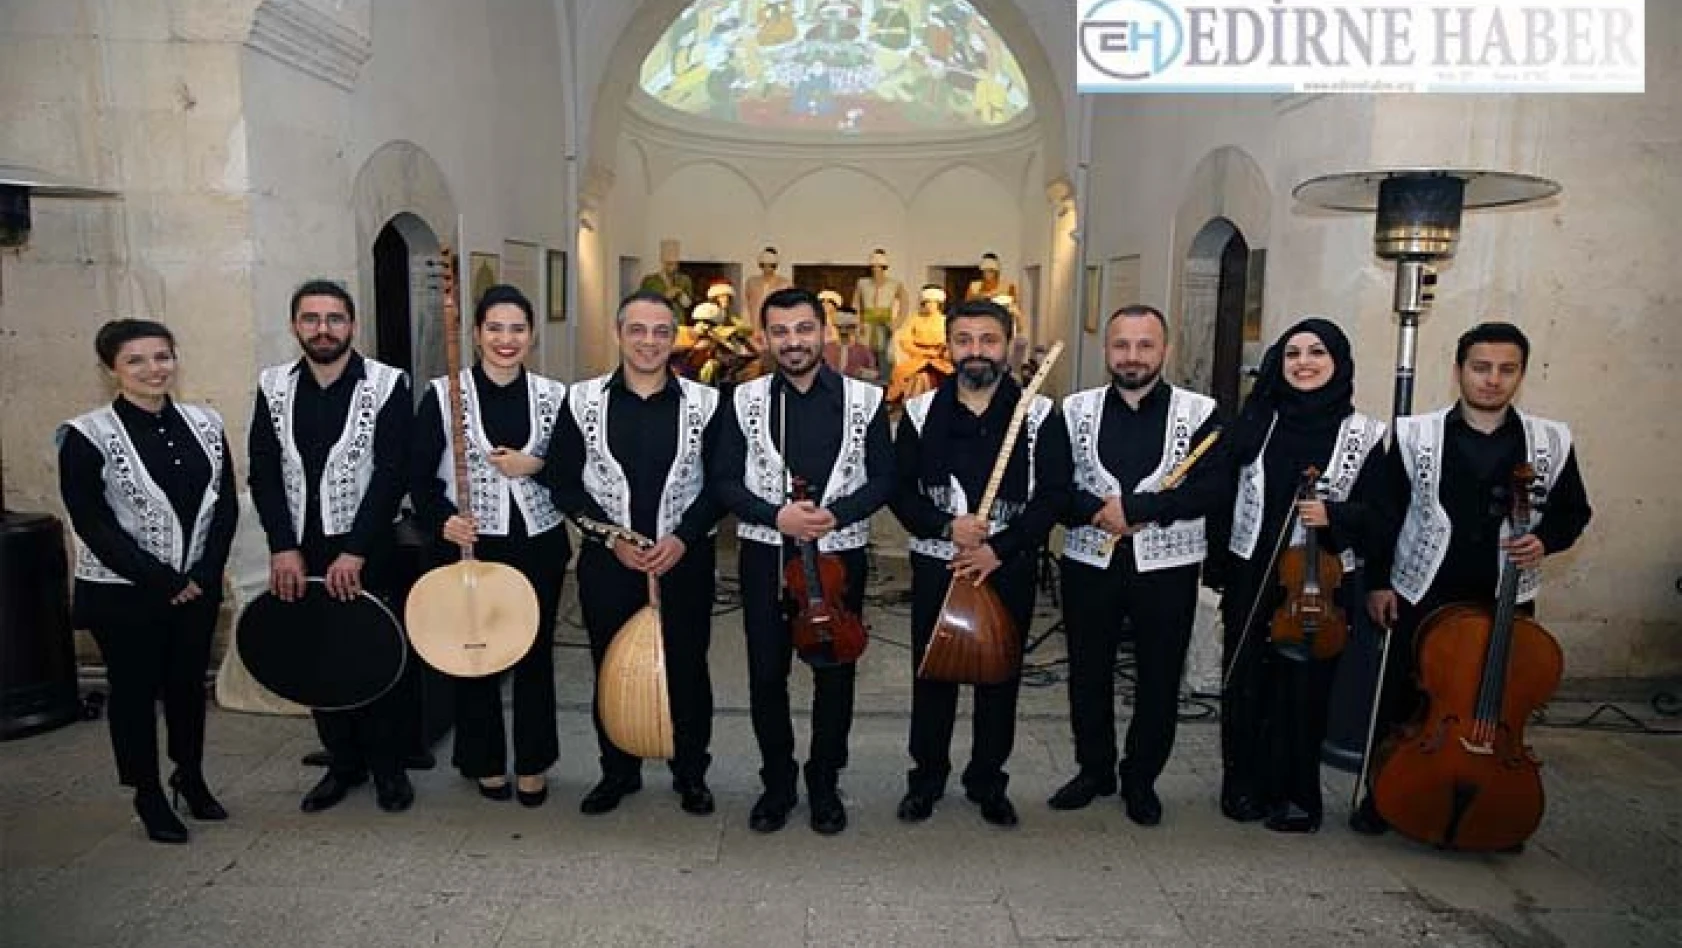 Sağlık Müzesi'nde Türk müziği konseri